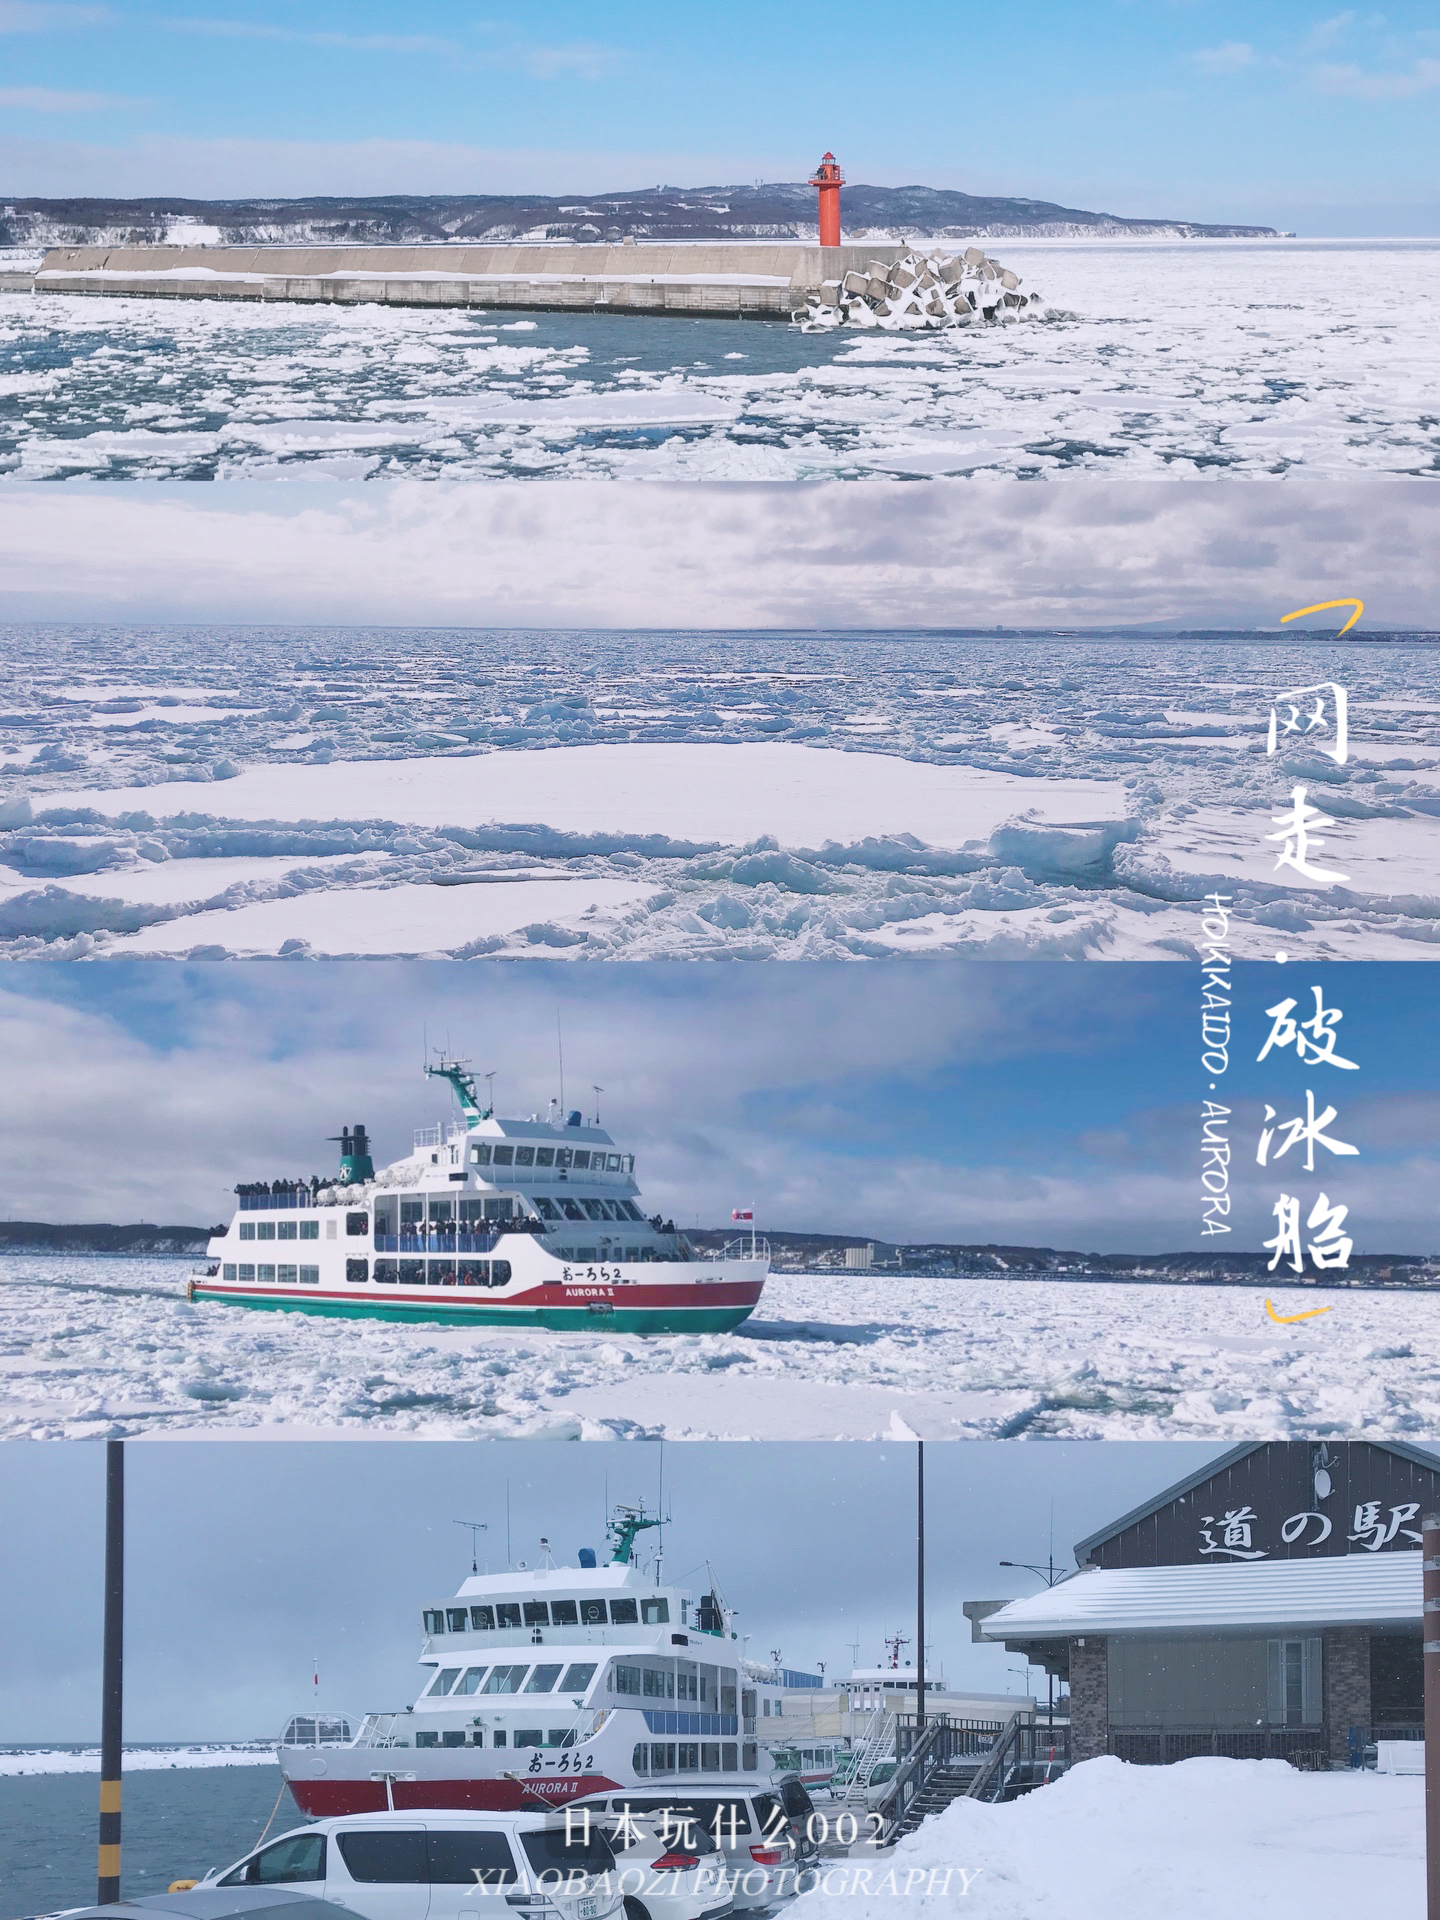 北海道旅行之网走 | 人生必体验一次的破冰之旅！